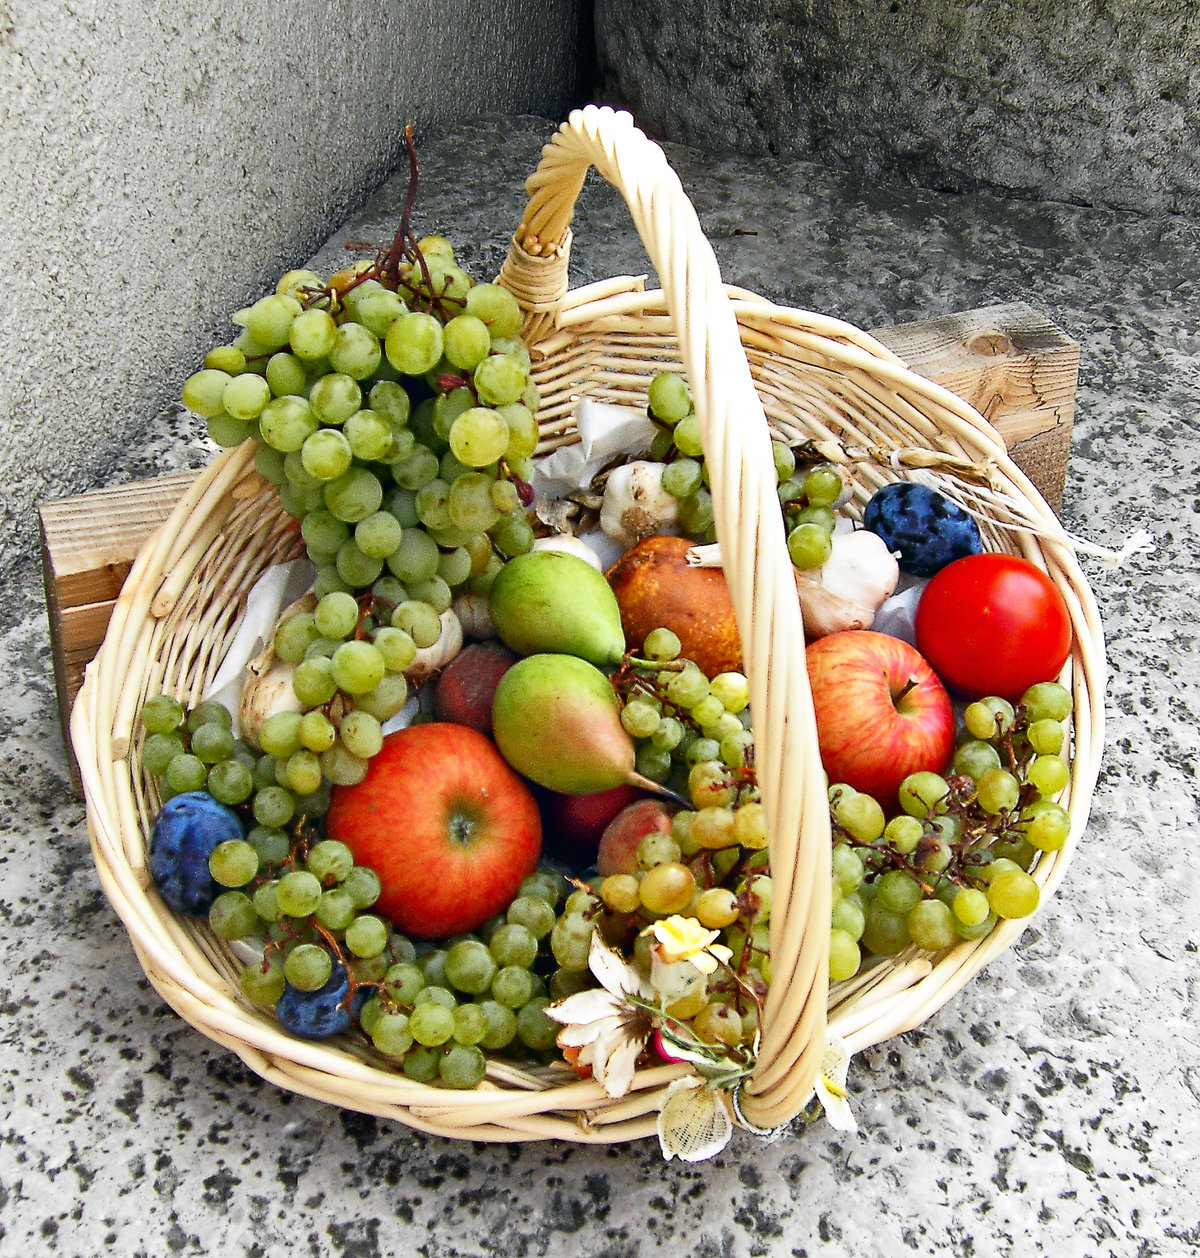 Фото корзины с вкусными фруктами по низкой цене